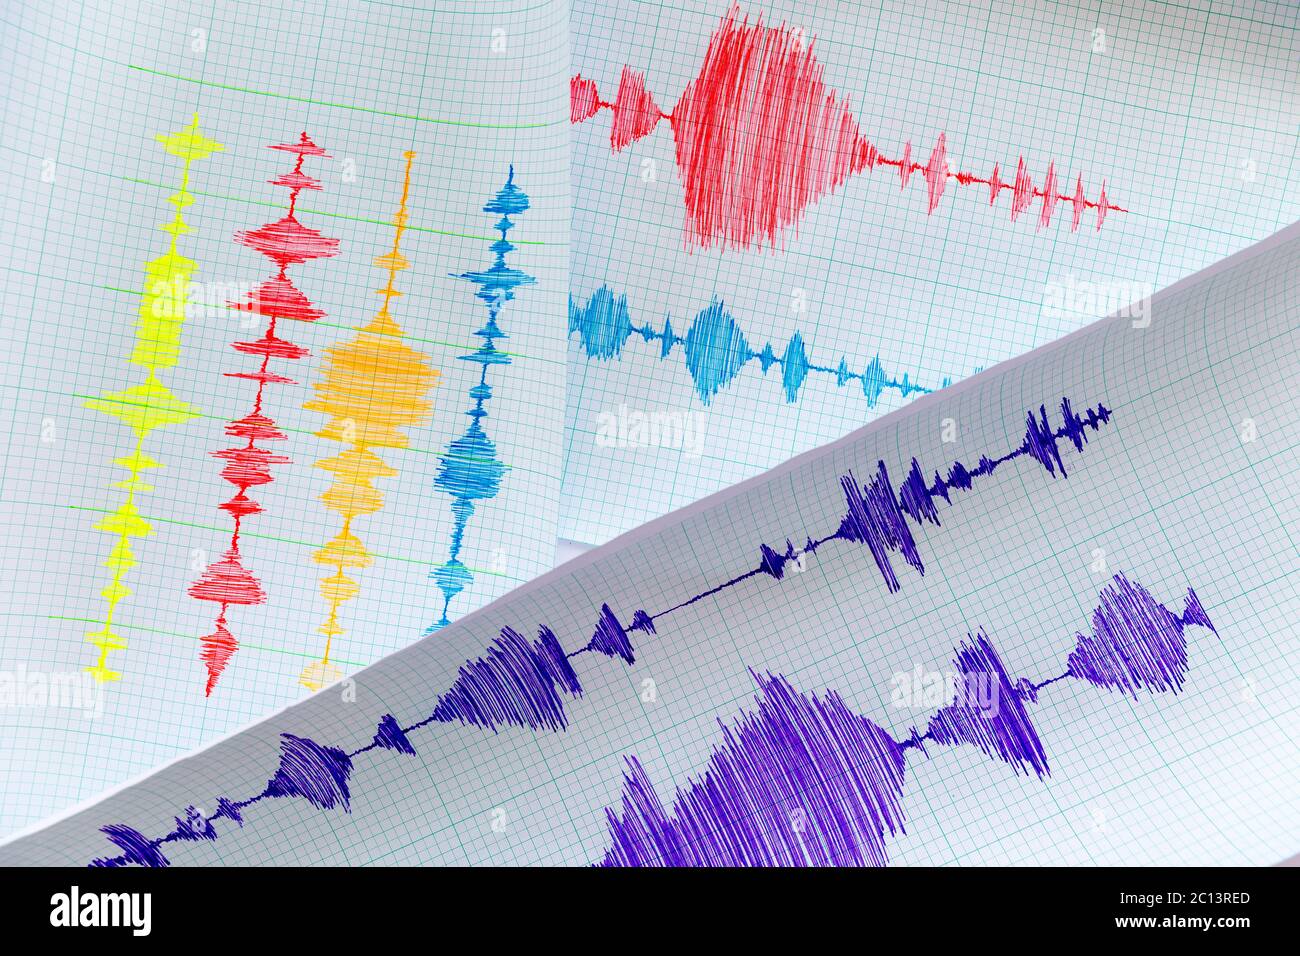 Seismologisches Gerät Blatt - Seismometer Stockfoto